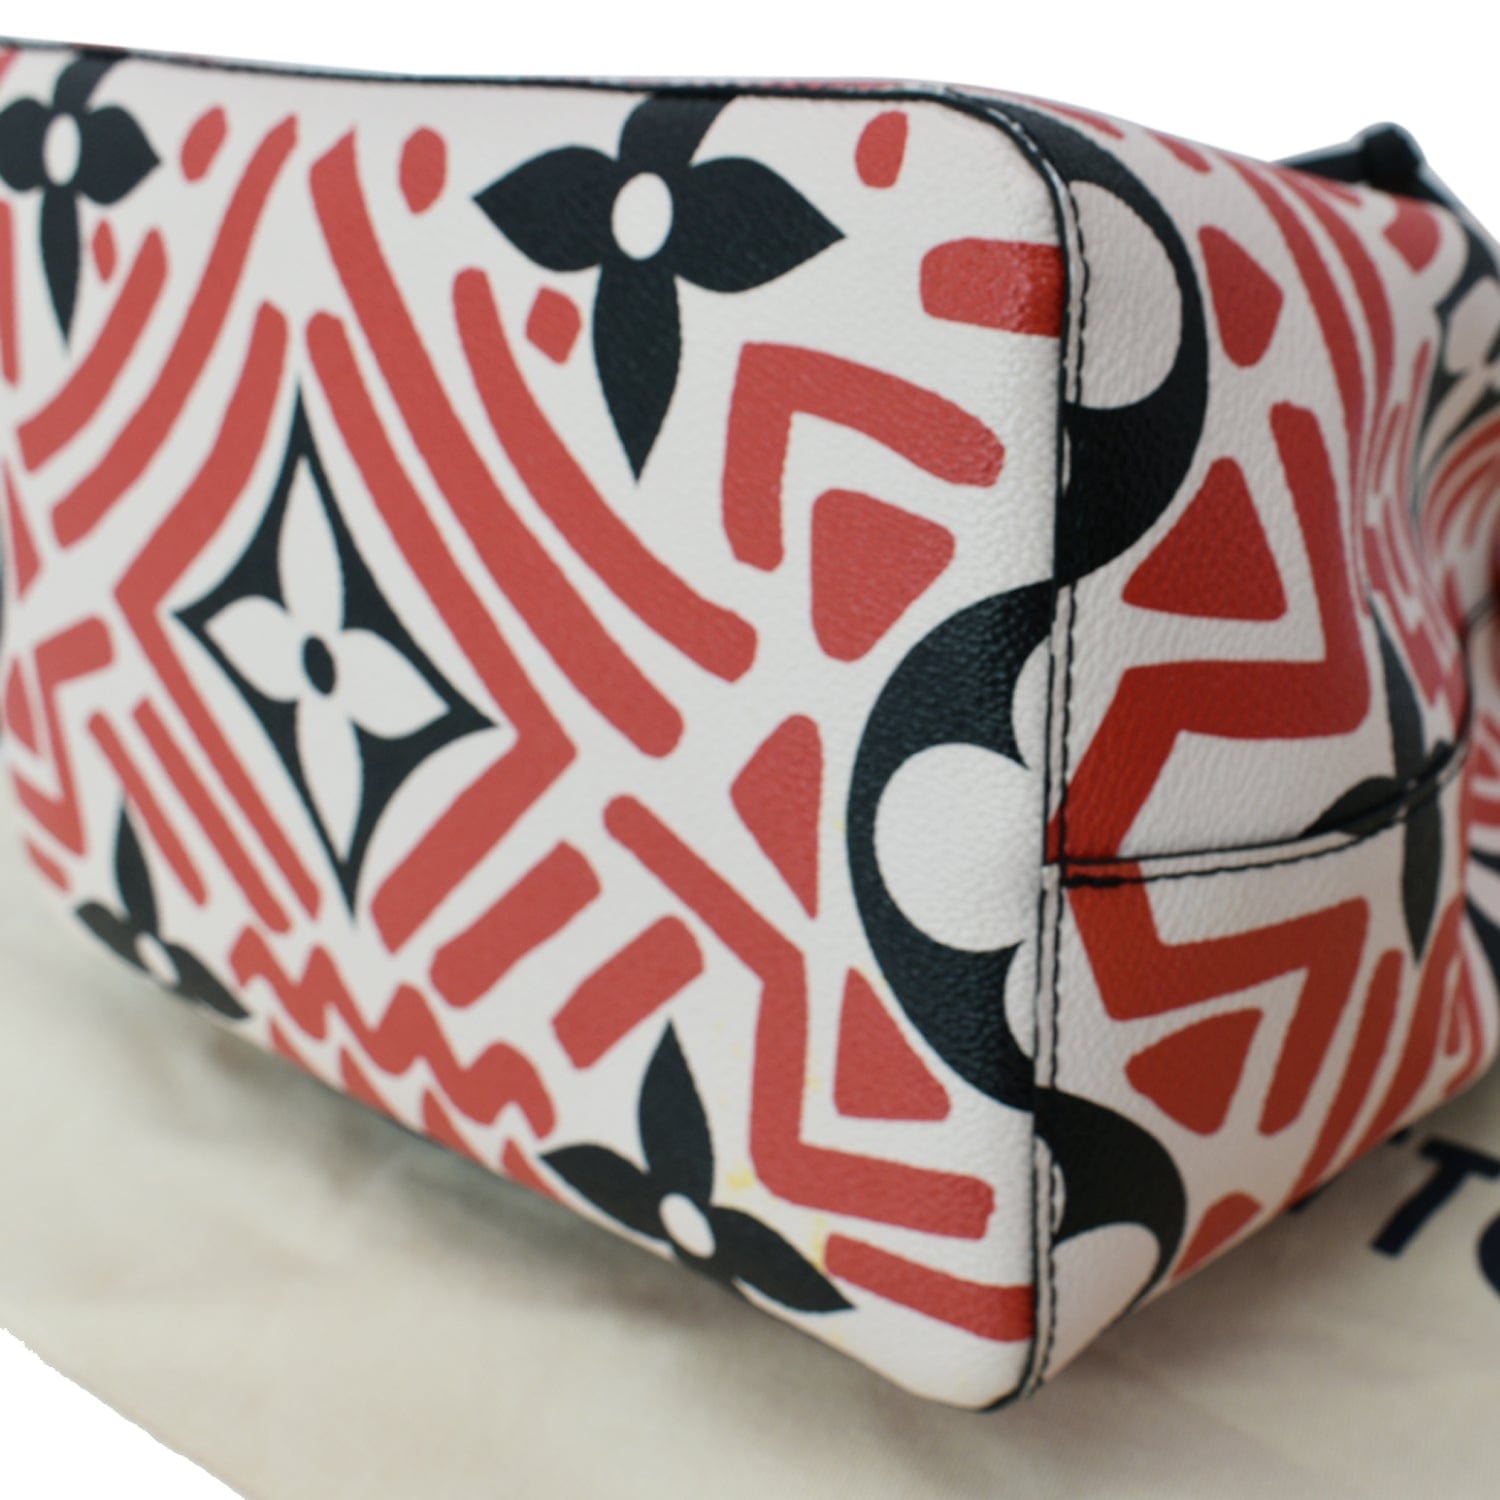 Louis Vuitton NeoNoe Poppy Red Monogram Canvas Shoulder Bag COMPLETE SET!